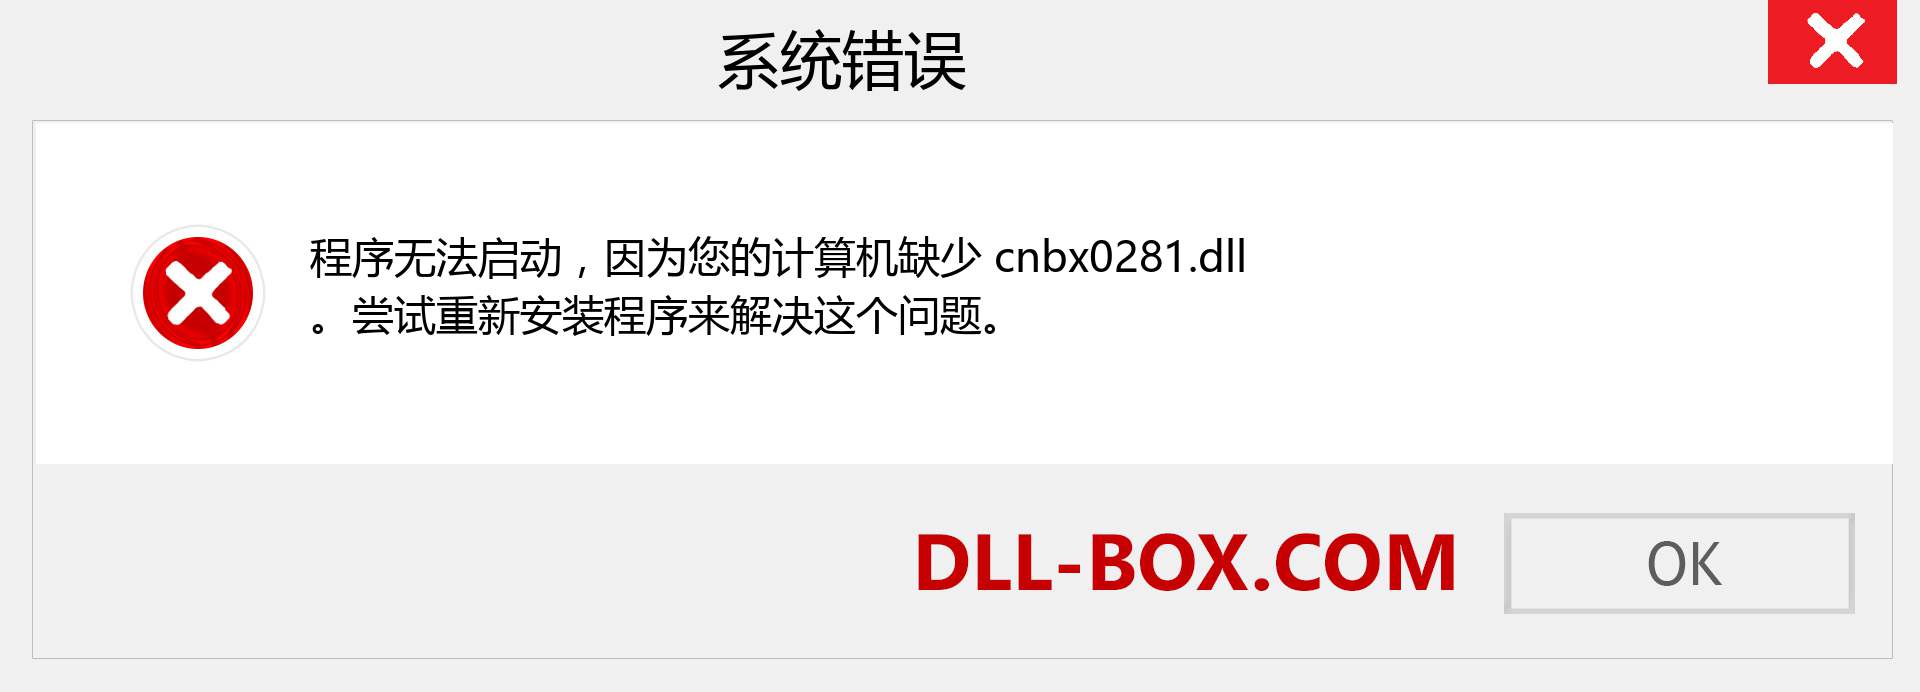 cnbx0281.dll 文件丢失？。 适用于 Windows 7、8、10 的下载 - 修复 Windows、照片、图像上的 cnbx0281 dll 丢失错误